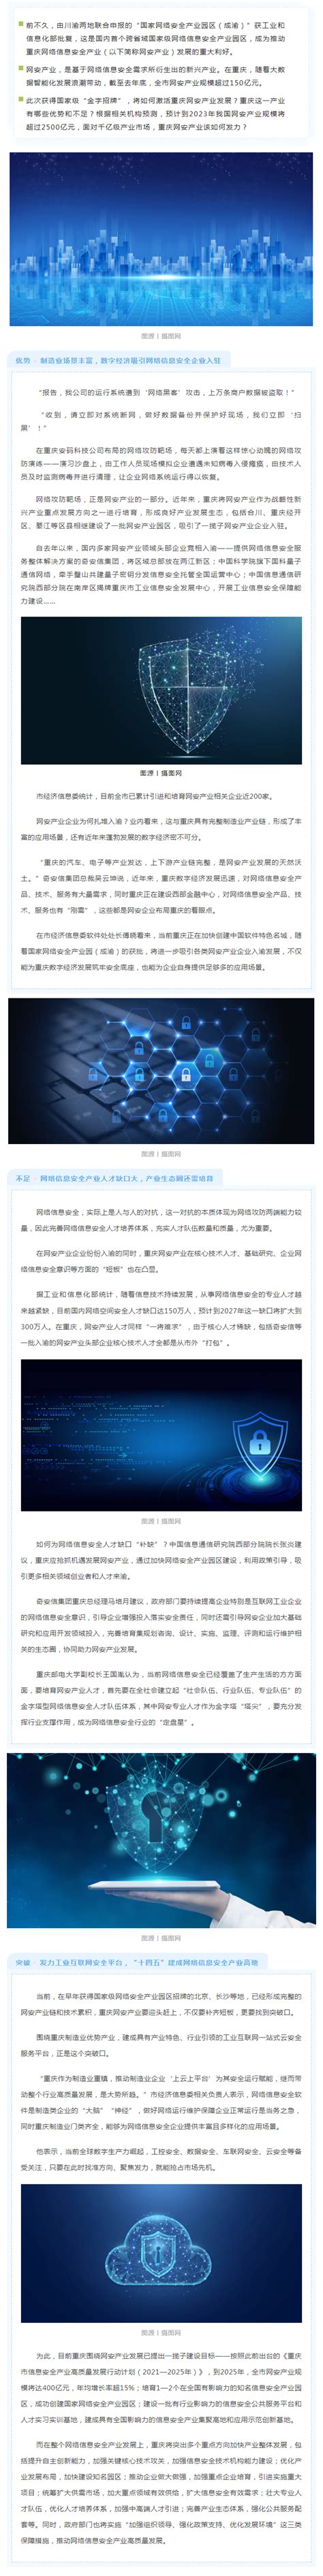 2021重庆网络安全宣传周启动 将开展6大类10余项重点活动